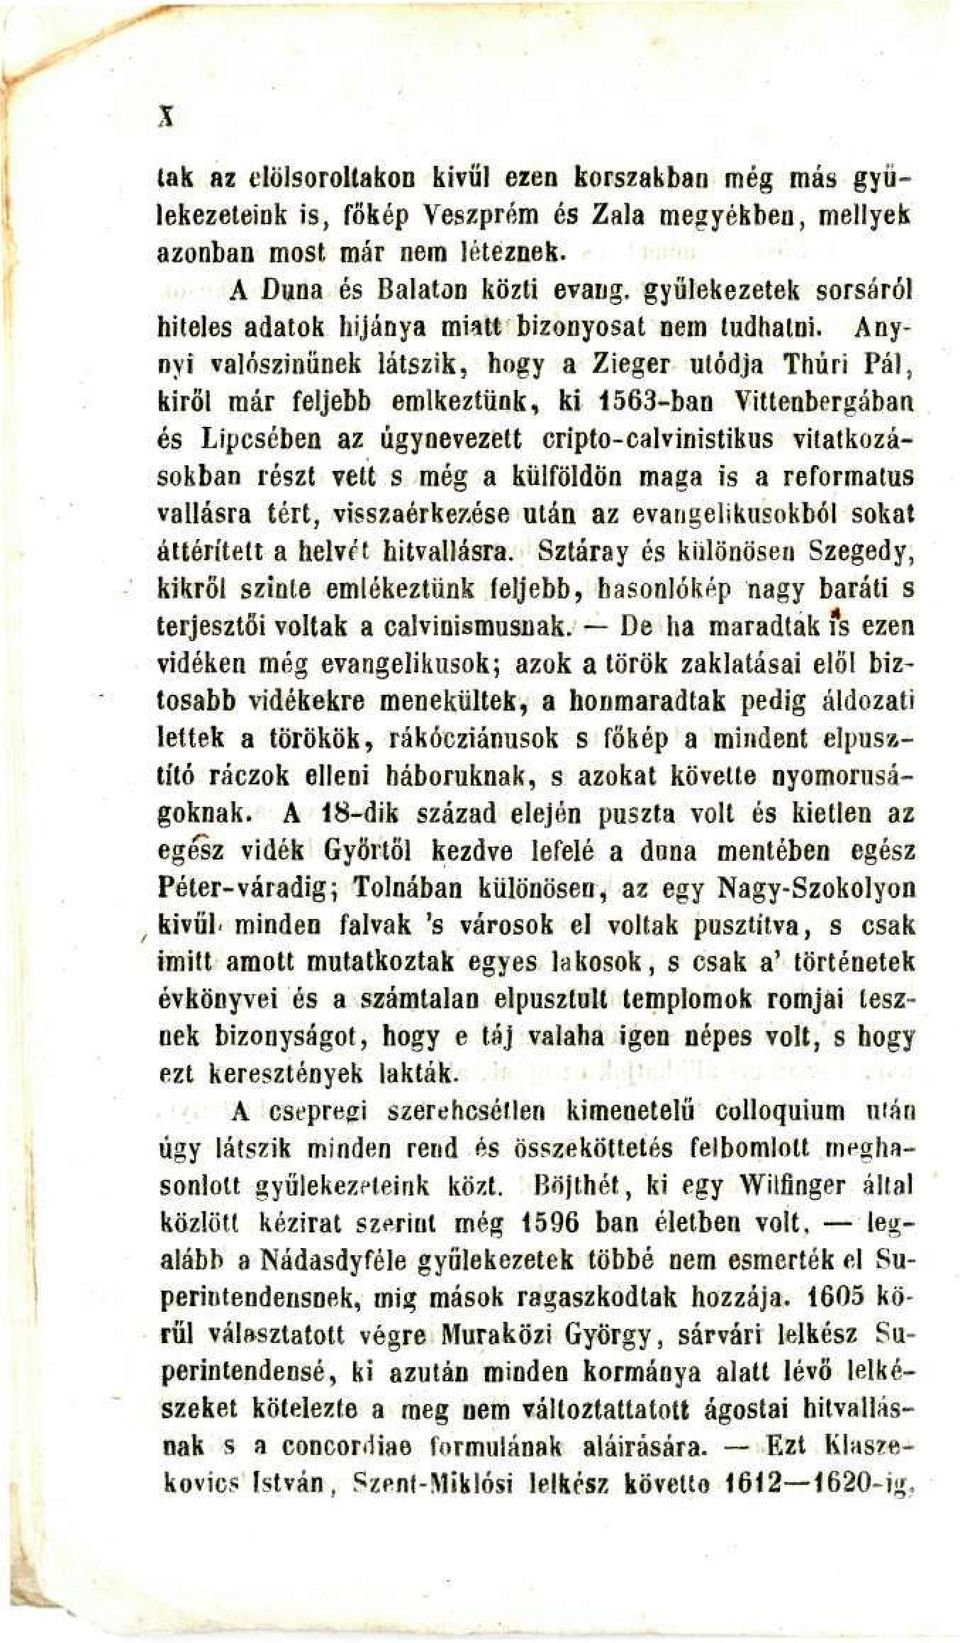 Anynyi valószínűnek látszik, hogy a Zieger utódja Thúri Pálj kiről már feljebb emlkeztünk, ki 1563-ban Vittenbergában és Lipcsében az úgynevezett crípto-calvinistikus vitatkozásokban részt vett s még